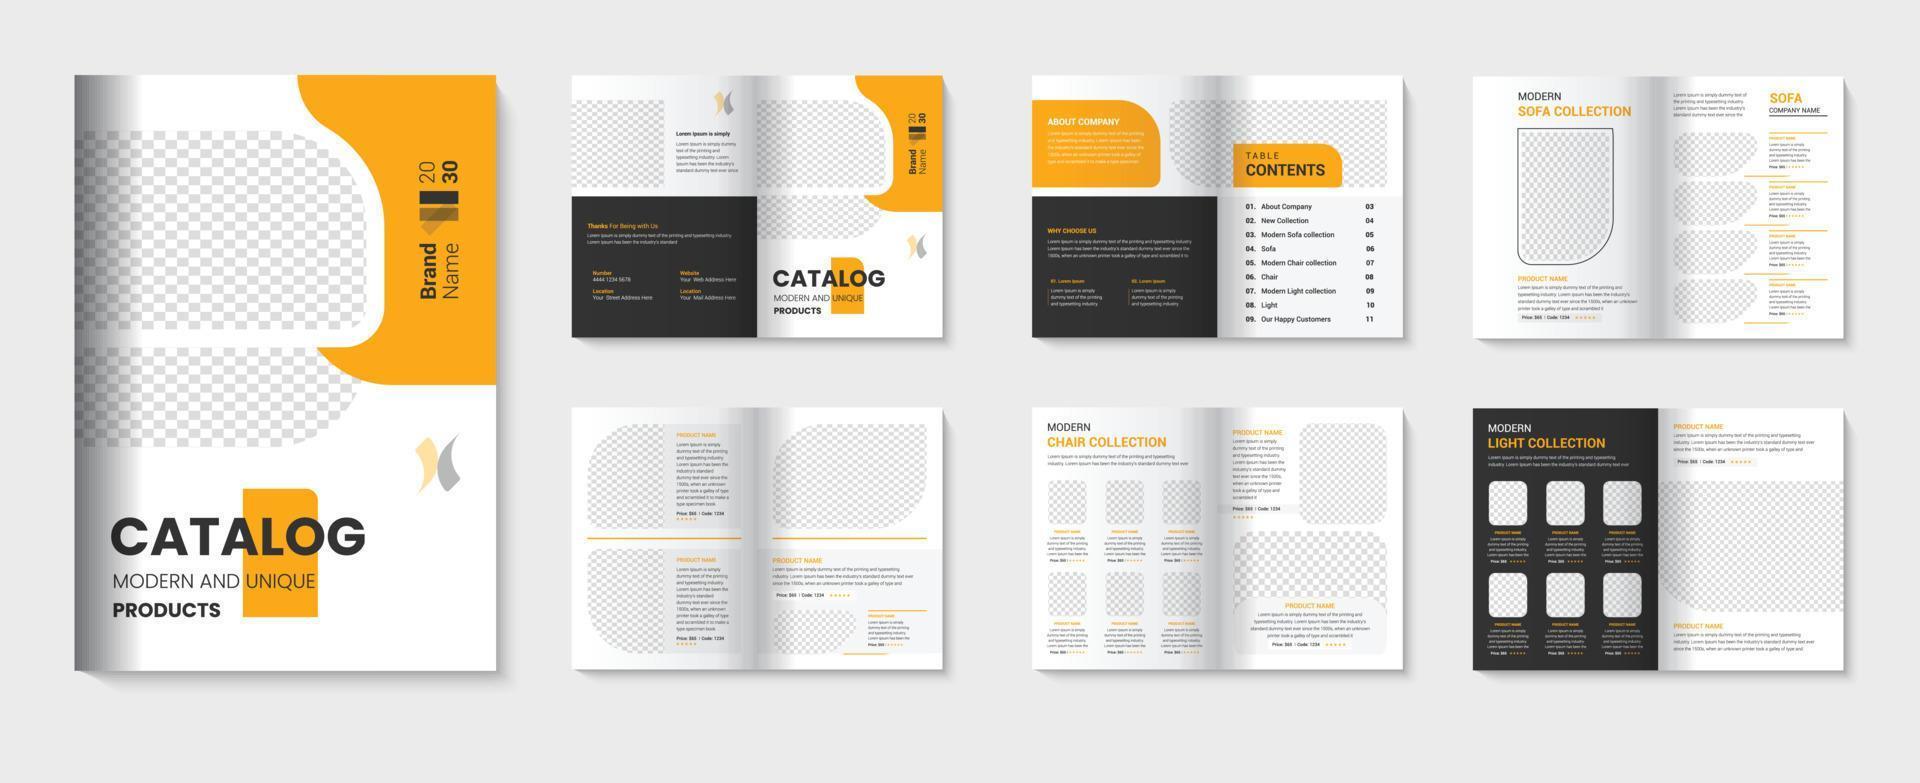 Product catalogus ontwerp met meubilair catalogus sjabloon voor bedrijf brochure pro downloaden vector